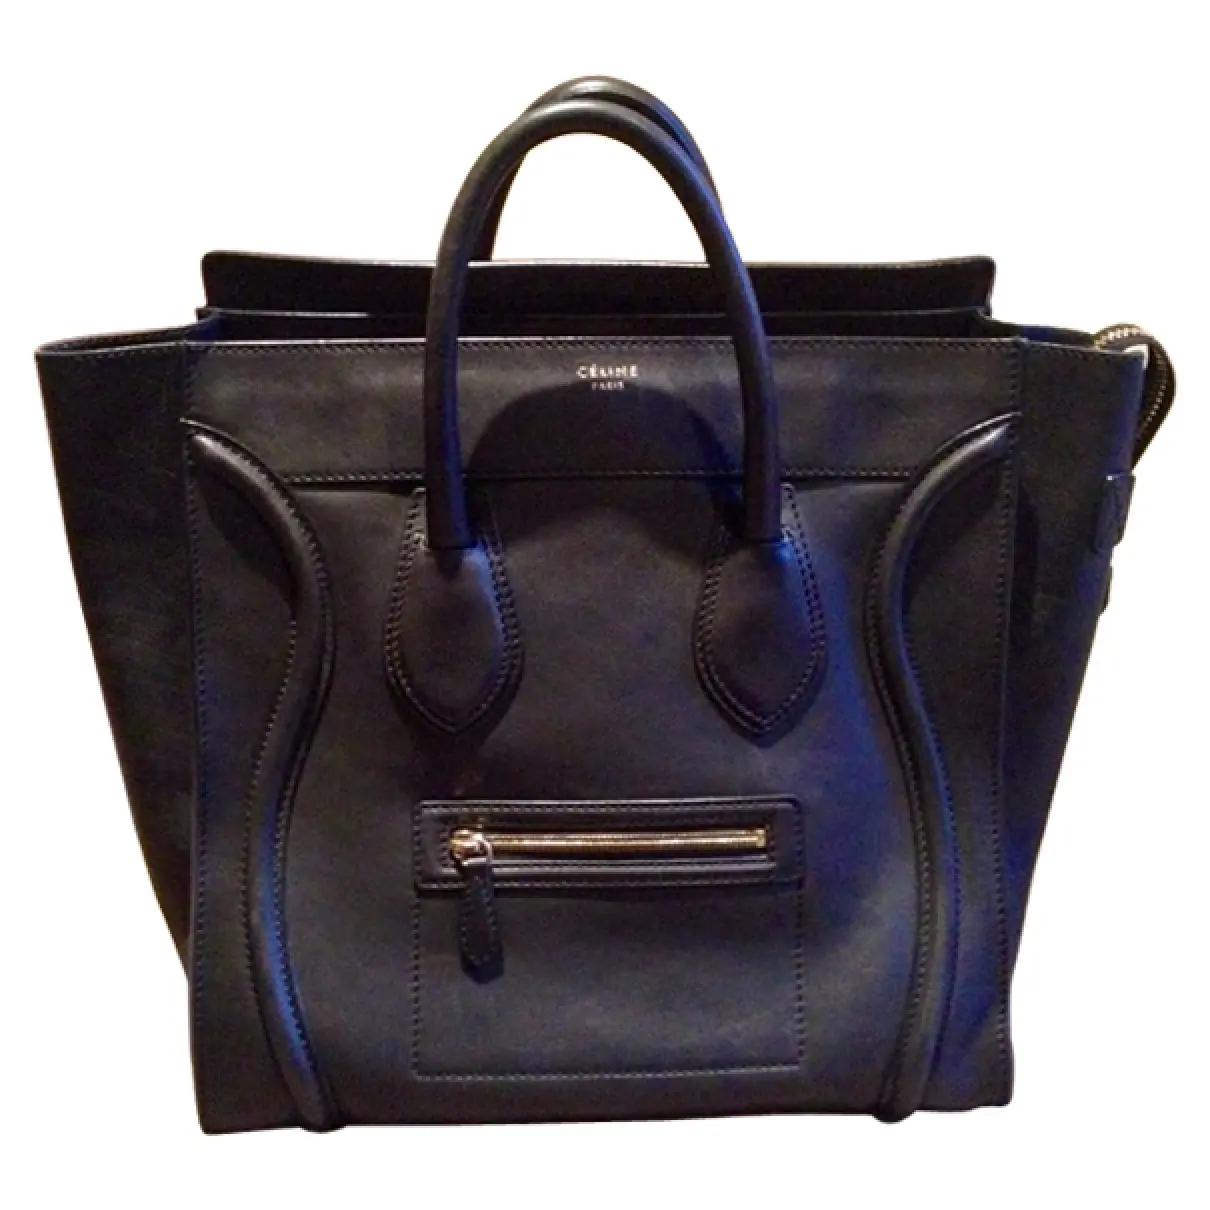 Black Leather Handbag Luggage Celine